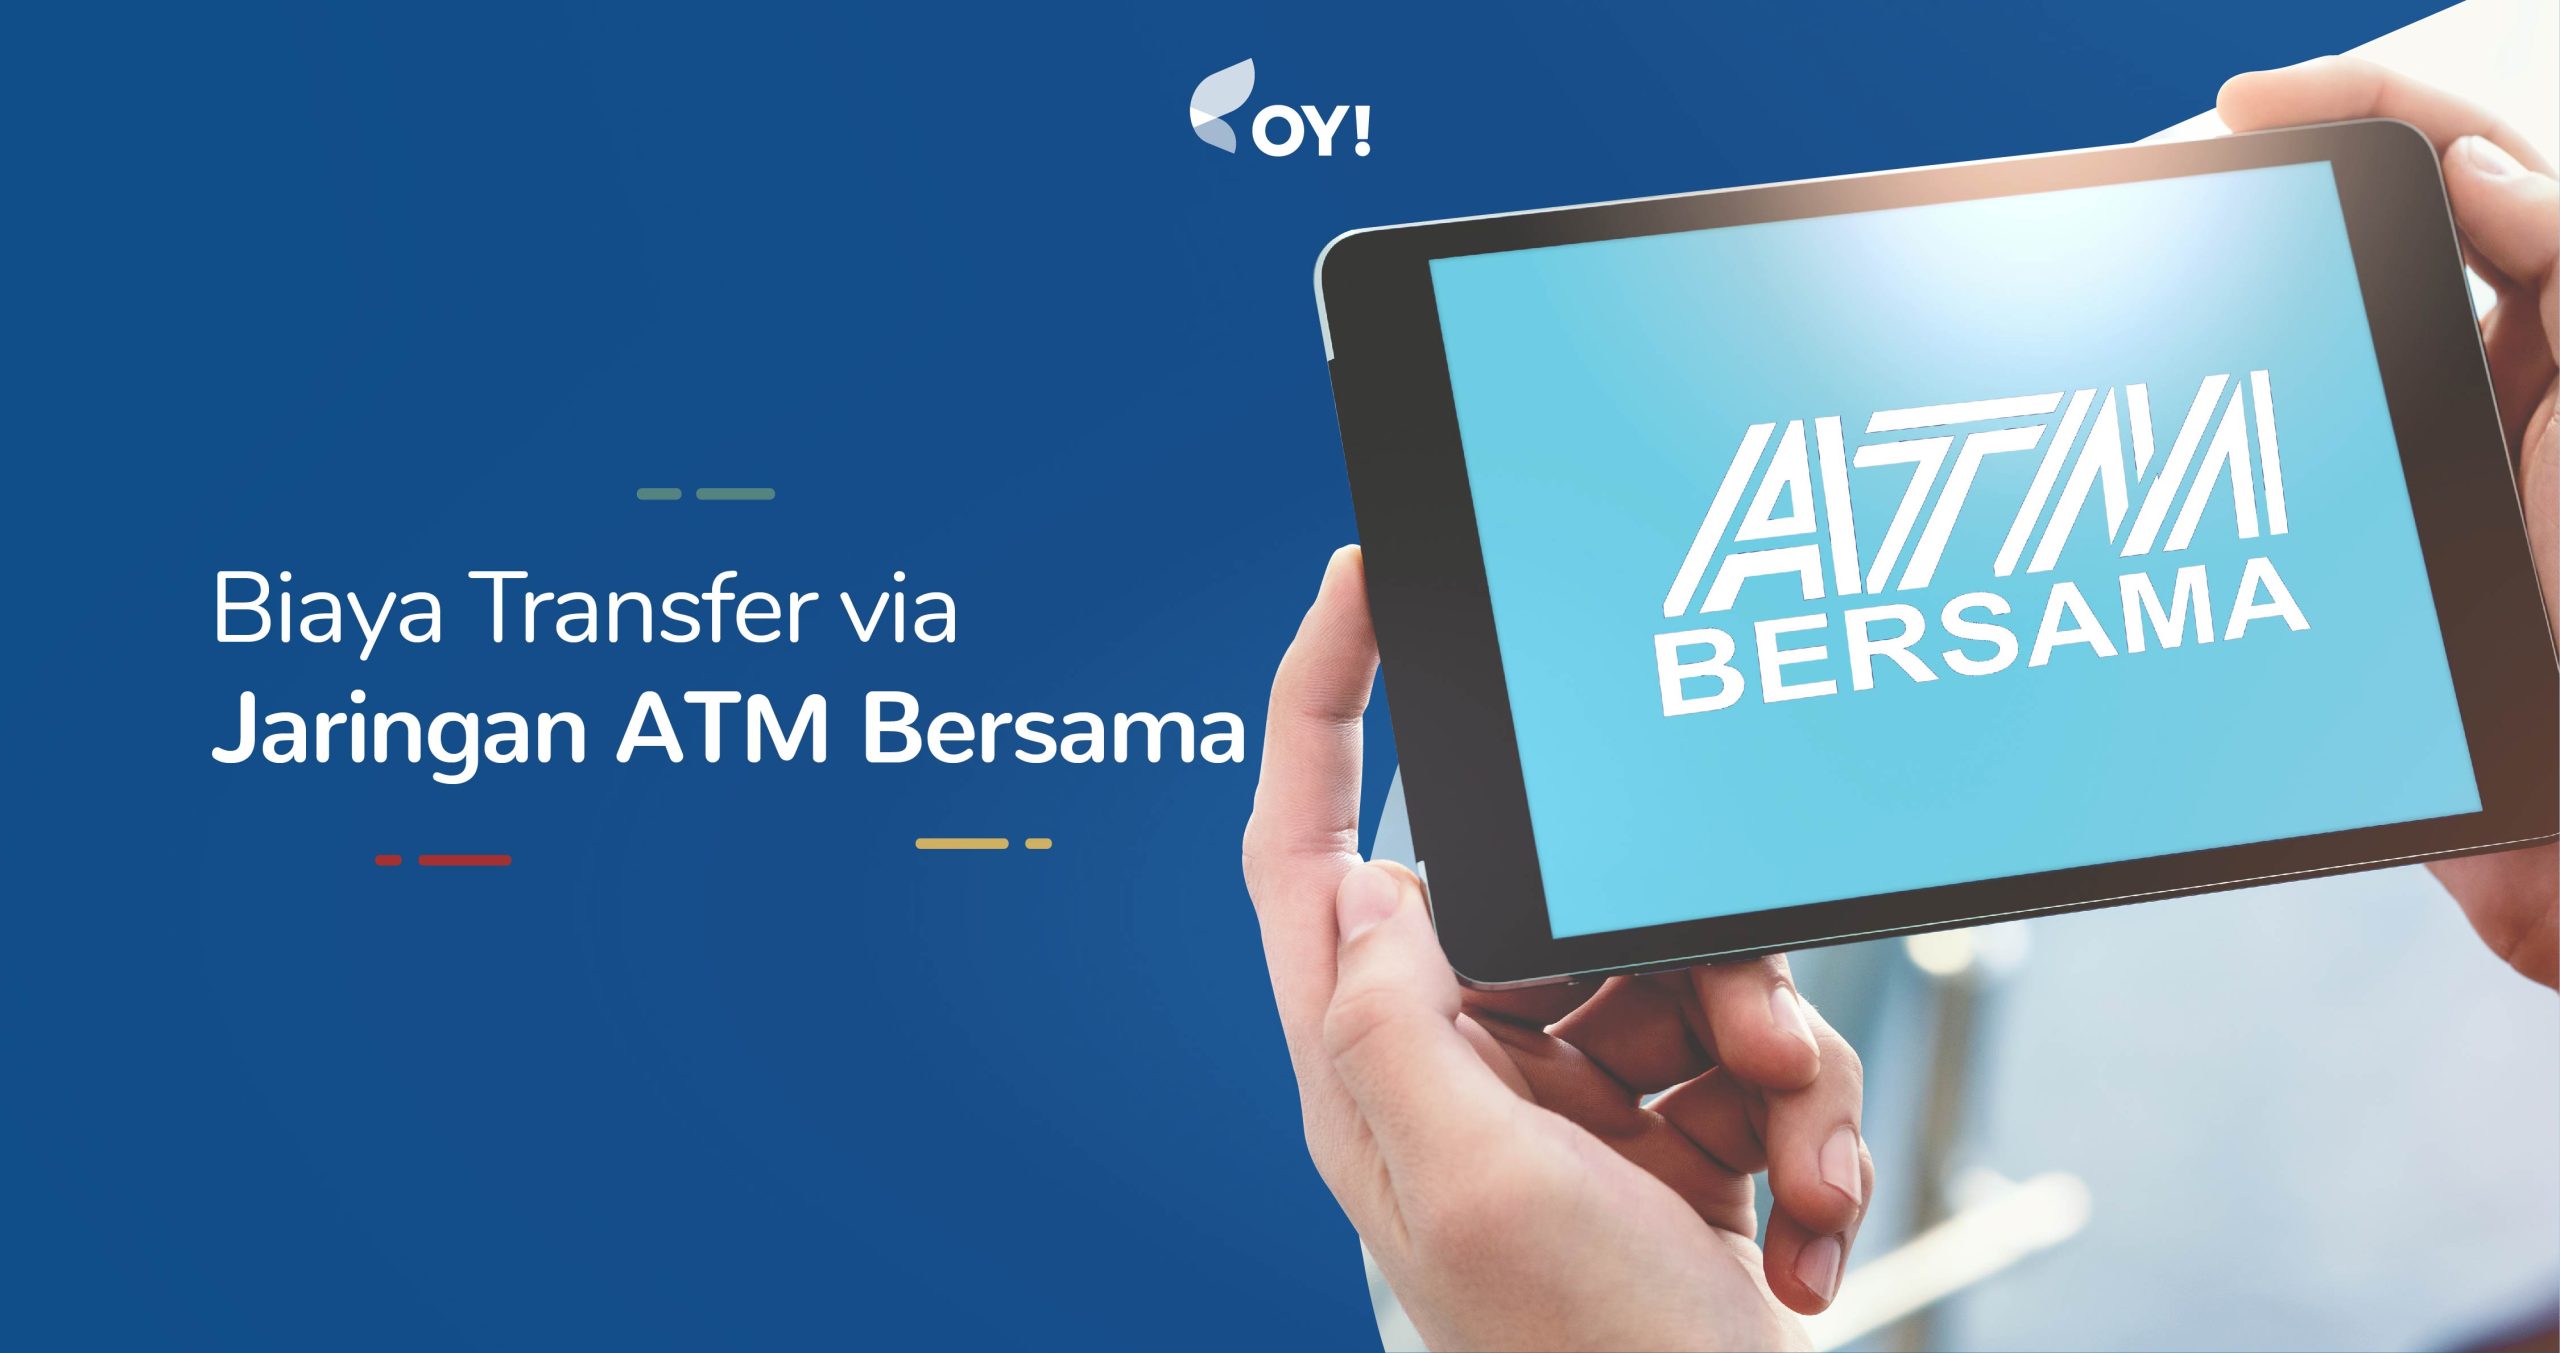 biaya transfer ATM bersama